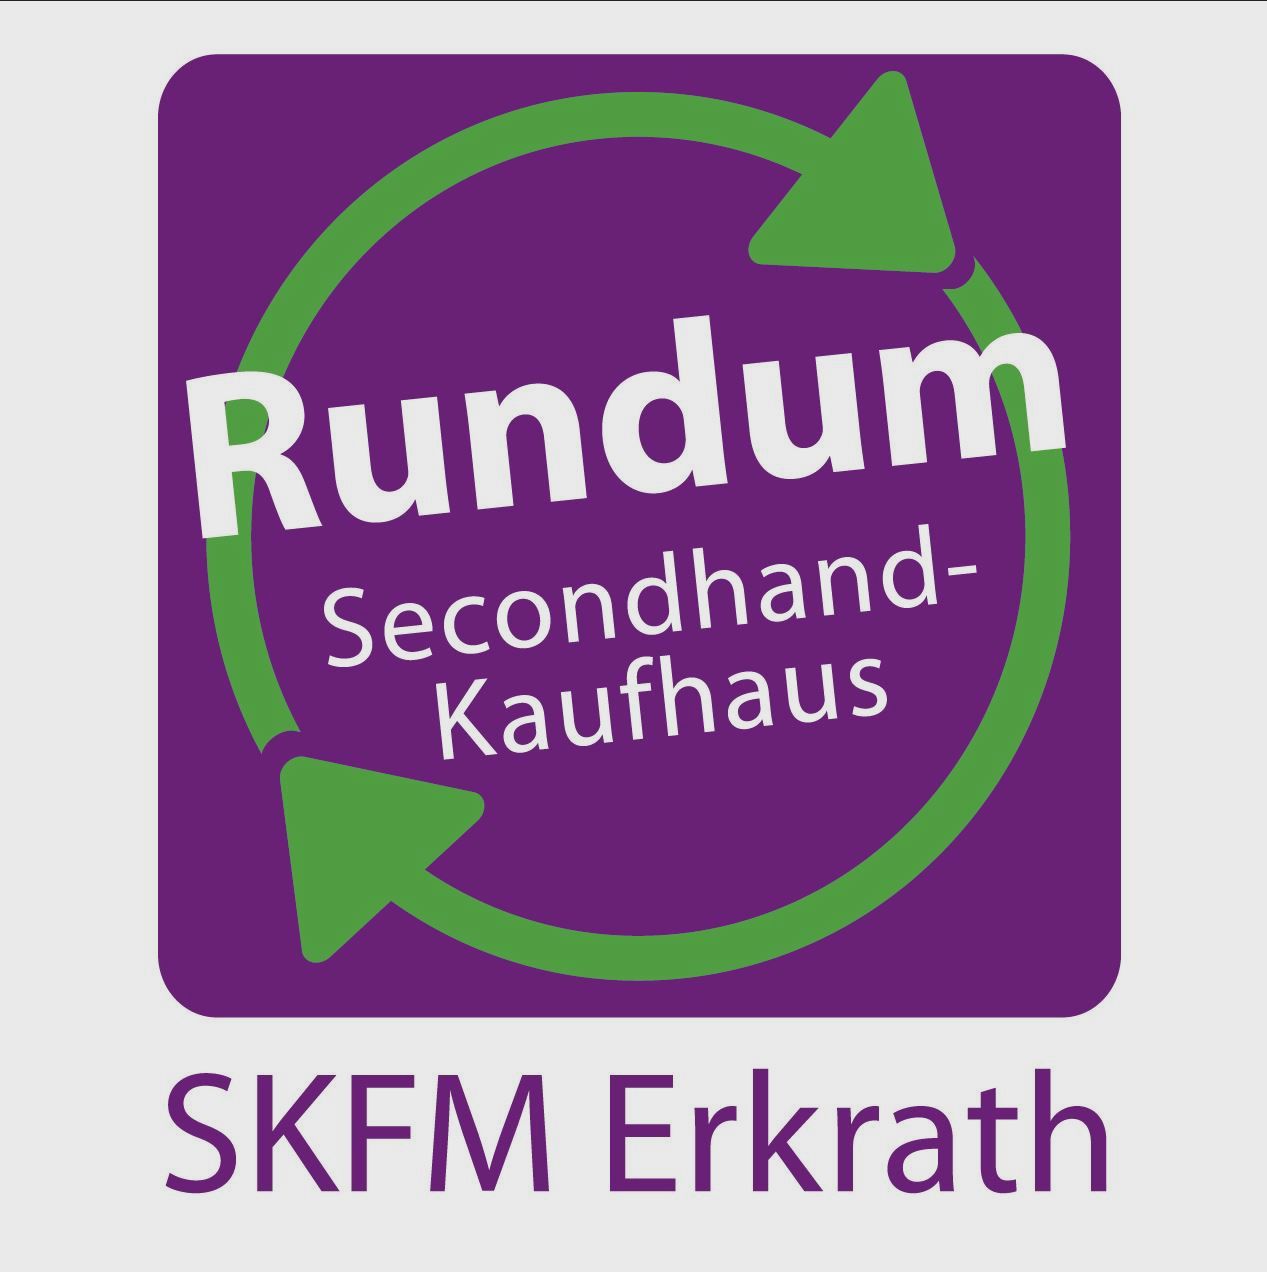 SKFM Erkrath e.V. "Rundum"